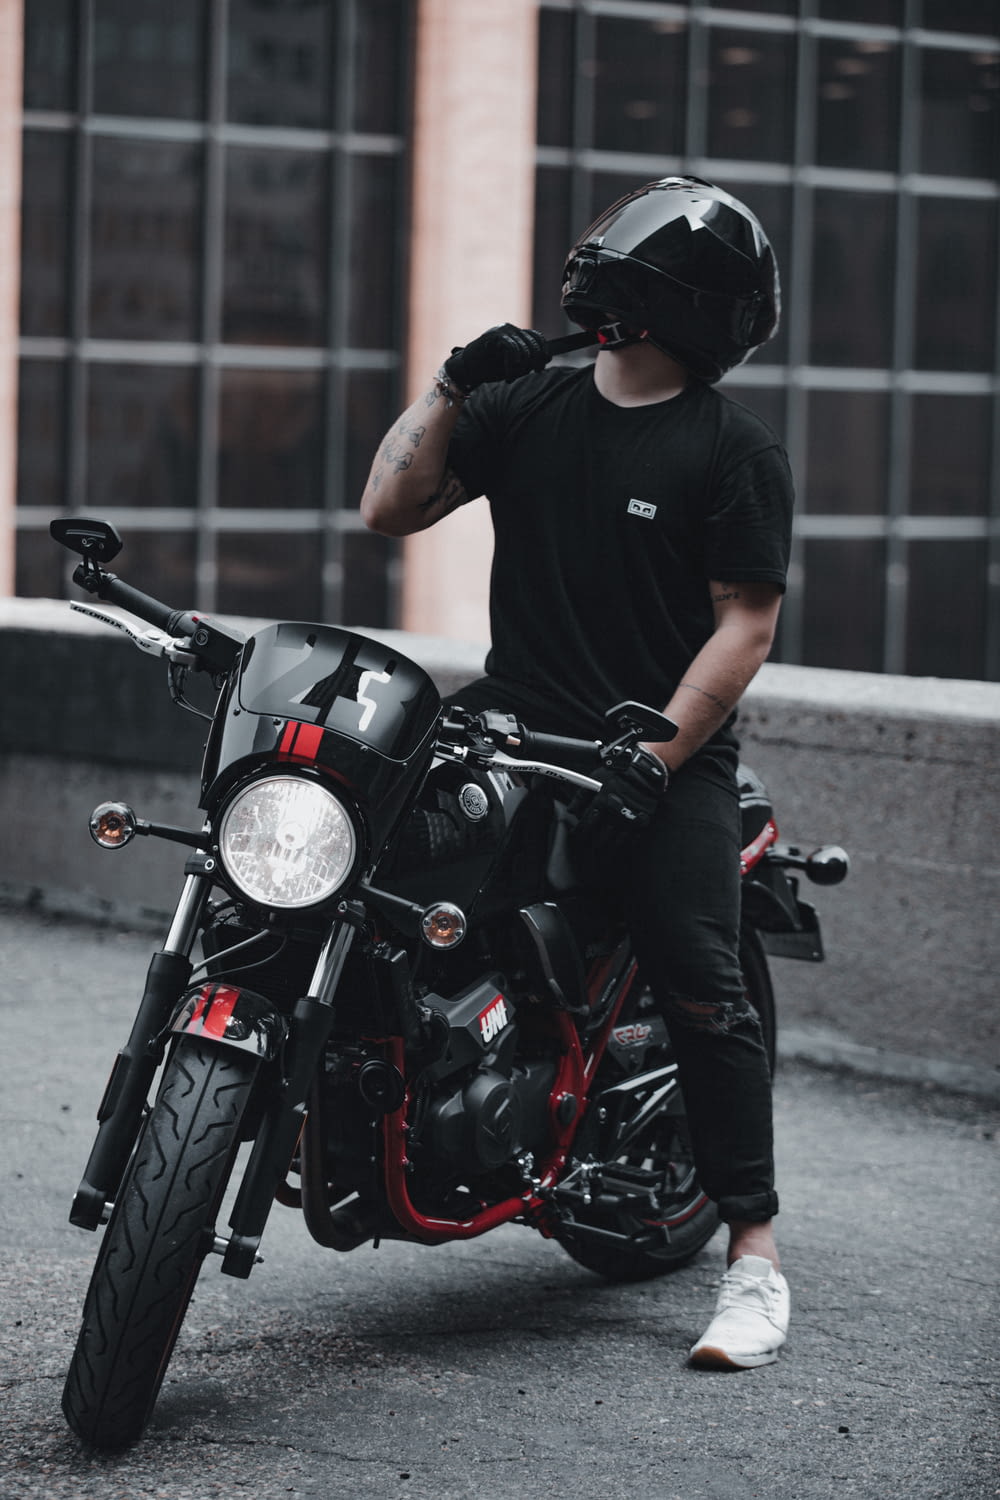 man in black crew neck t-shirt riding black motorcycle during daytime